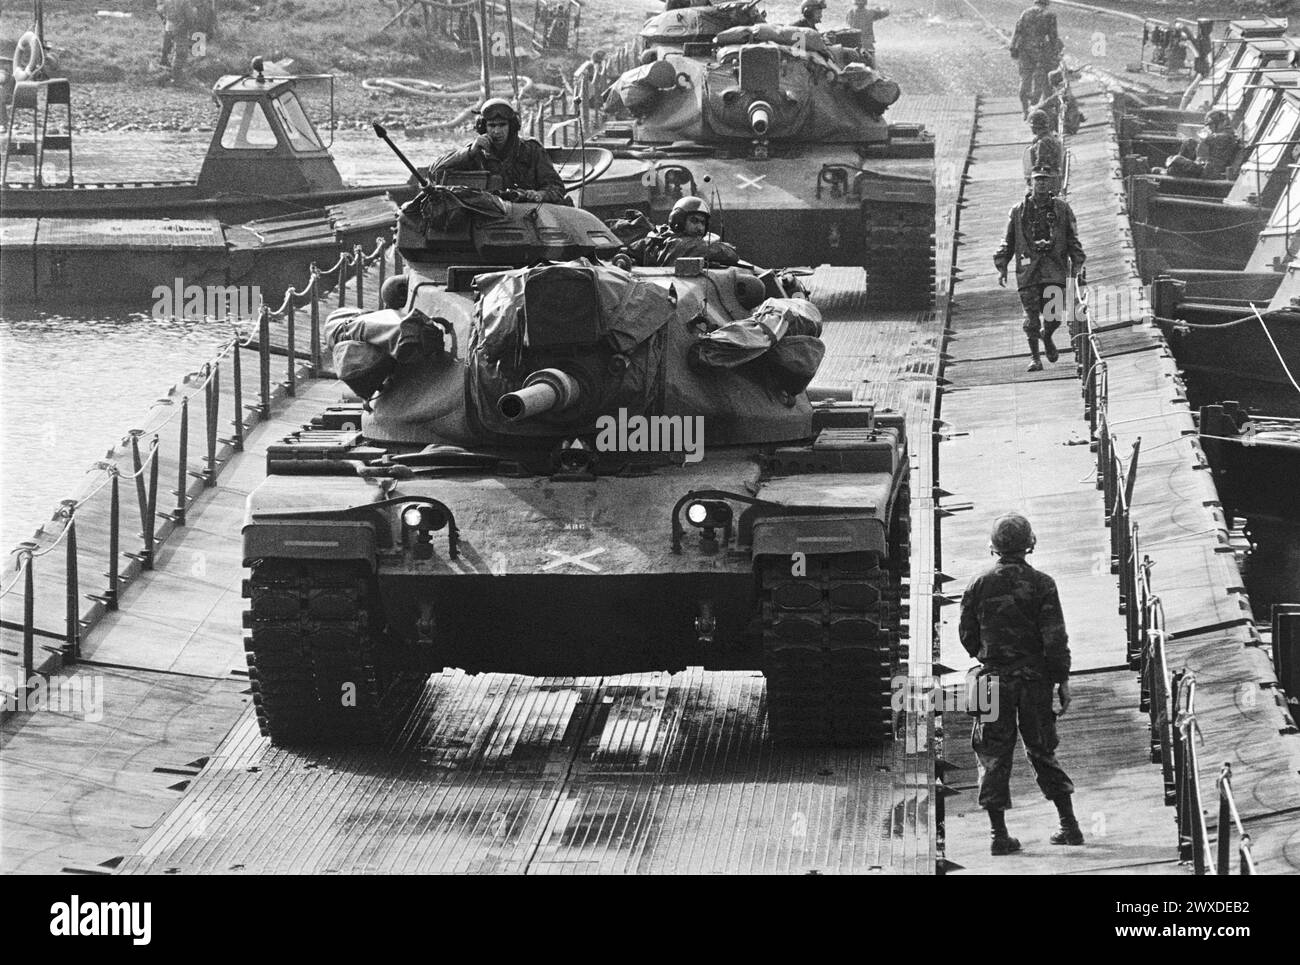 - Exercices de l'OTAN en Hollande, les chars M 60 de l'armée américaine traversent un pont flottant sur la Meuse (octobre 1983) - esercitazioni NATO in Olanda, carri armati M 60 dell'US Army attraversano un ponte di barche sul fiume Mosa(ottobre 1983) Banque D'Images